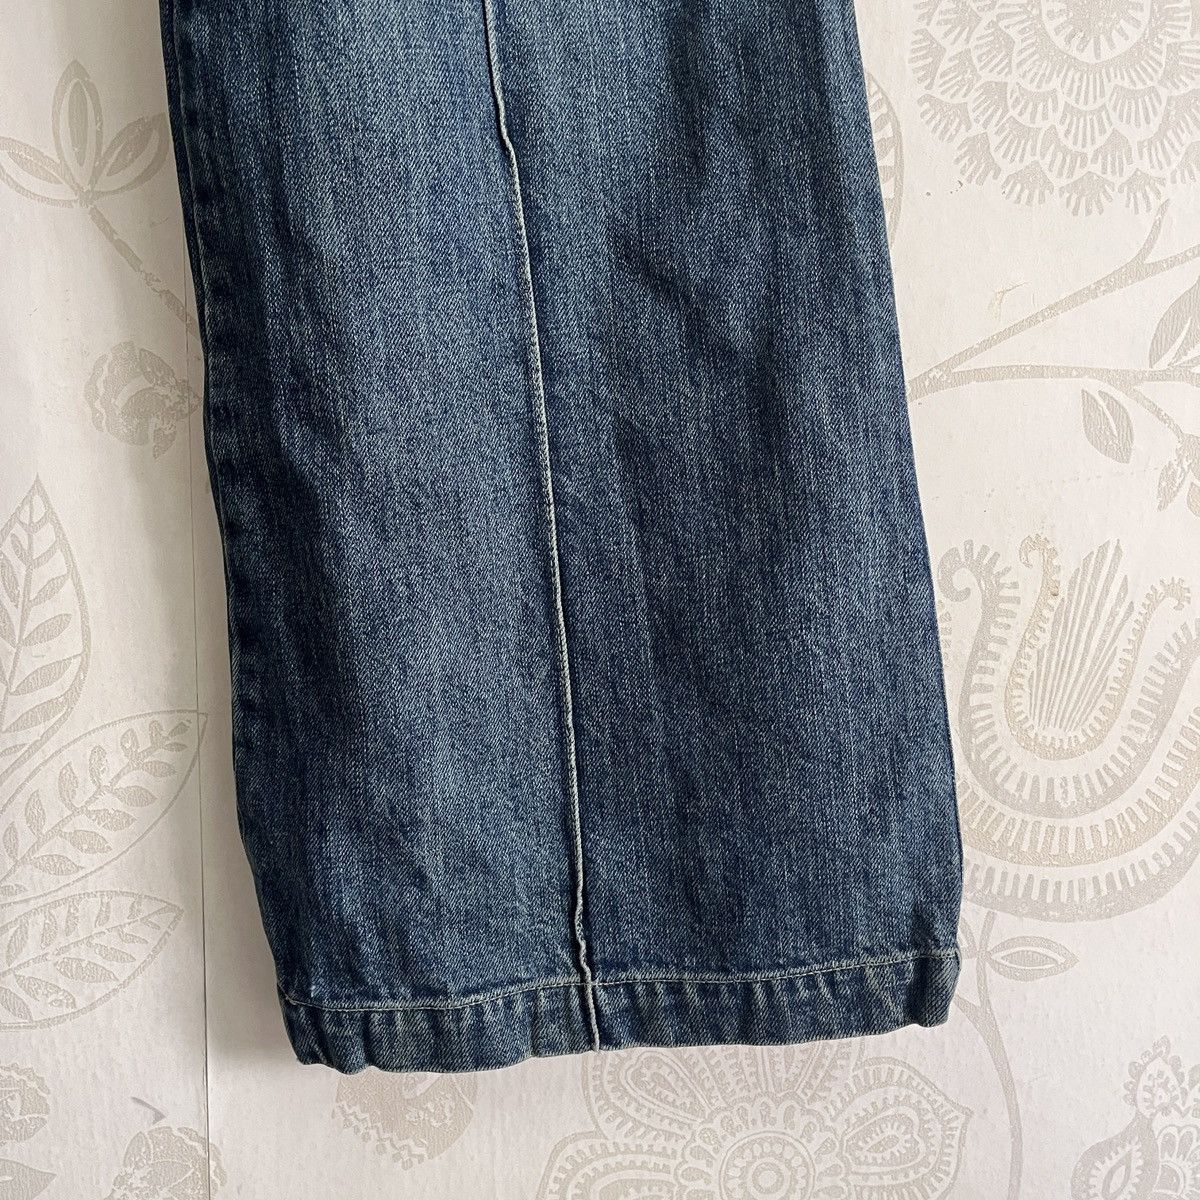 Jil Stuart - Jill Stuart Flare Boot Cut Classic Denim Jeans - 12